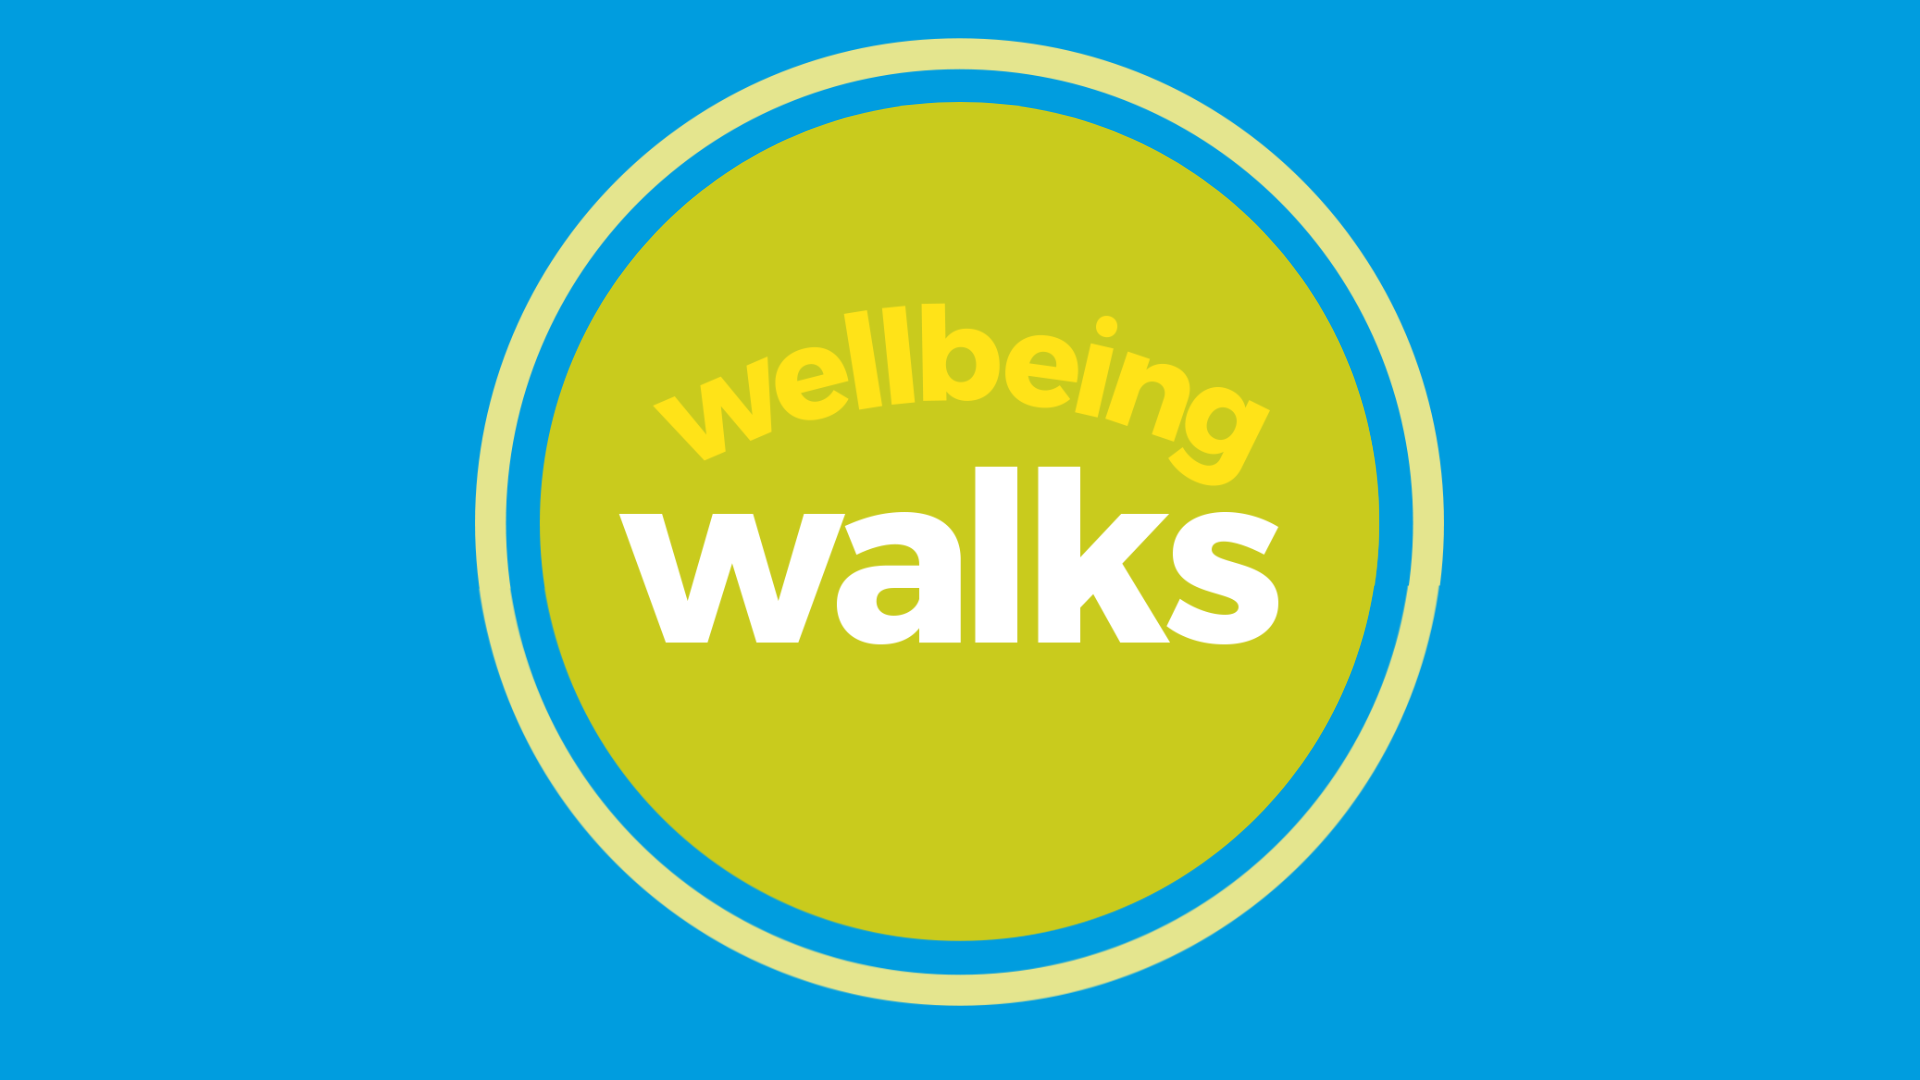 Wellbeing Walks